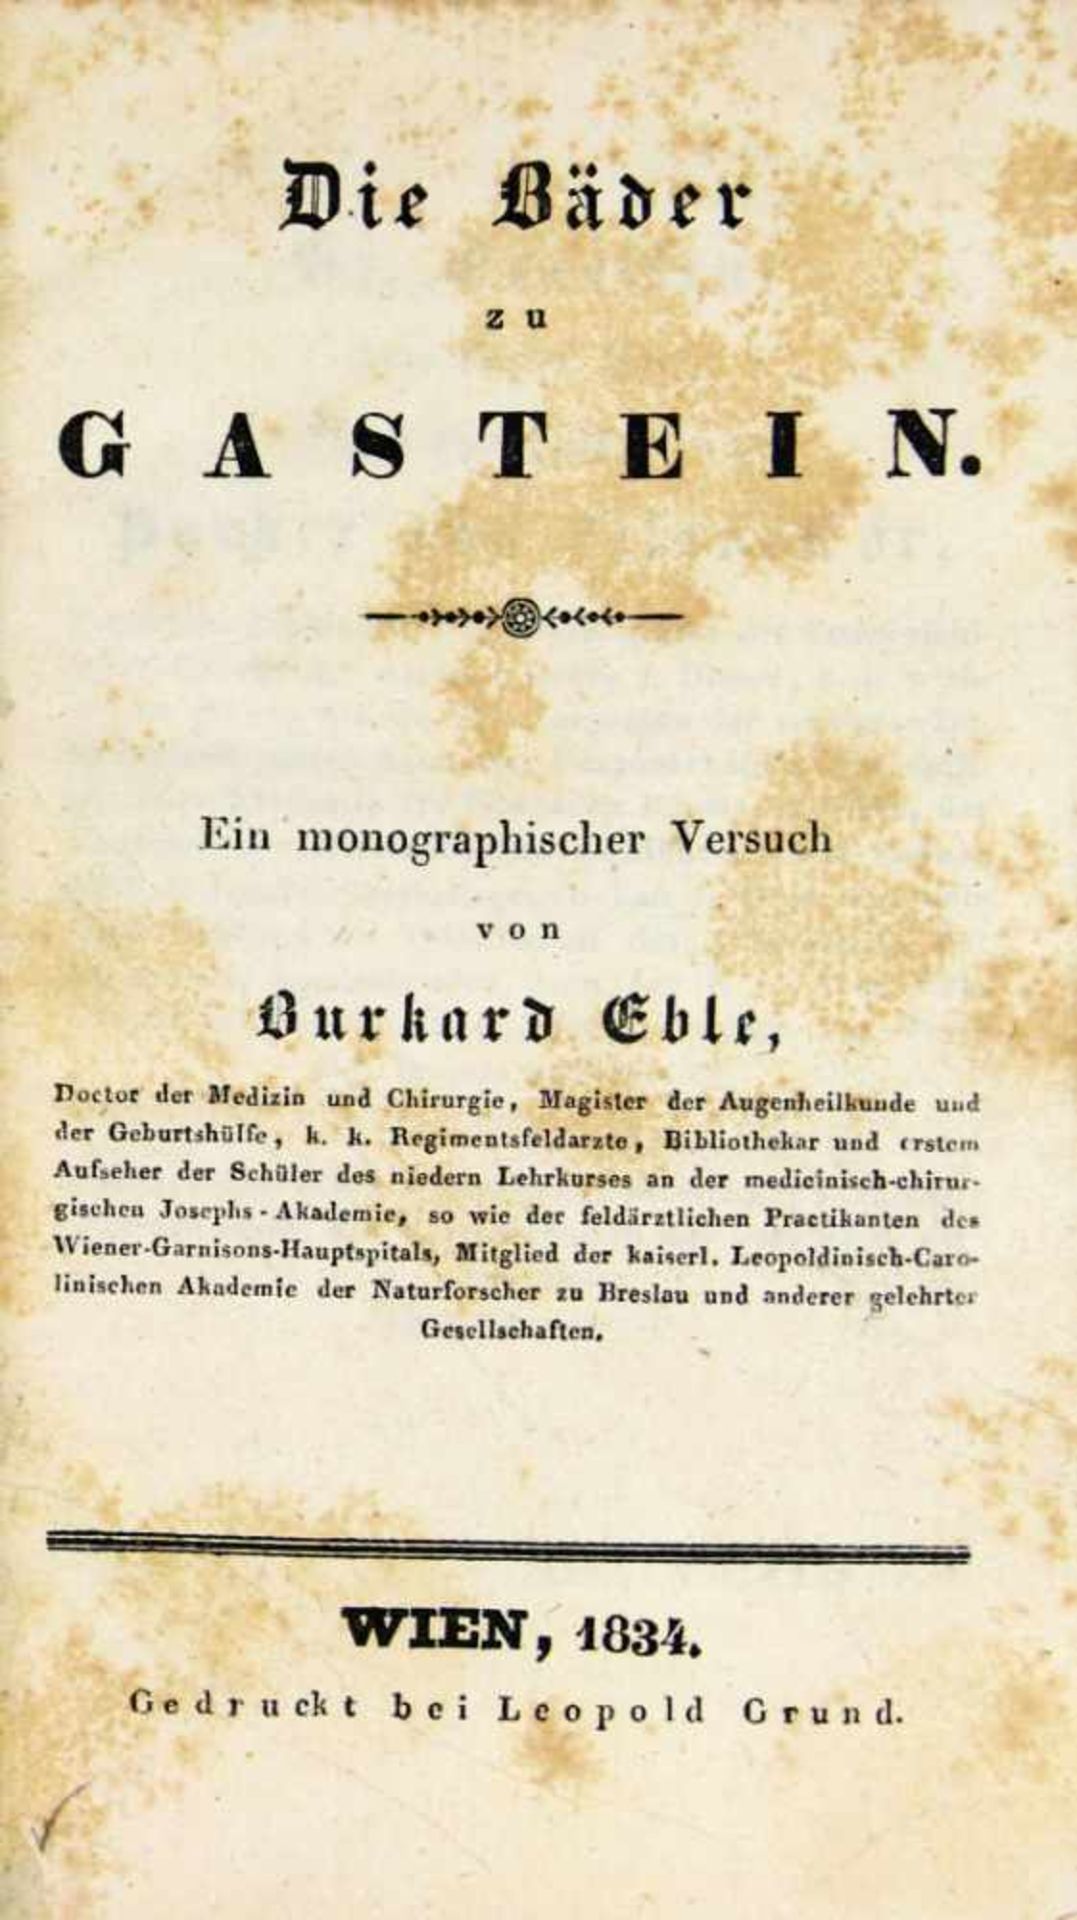 Balneologie. - Bad Gastein. -Eble, Burkhard:Die Bäder zu Gastein. Ein monographischer Versuch. Wien,